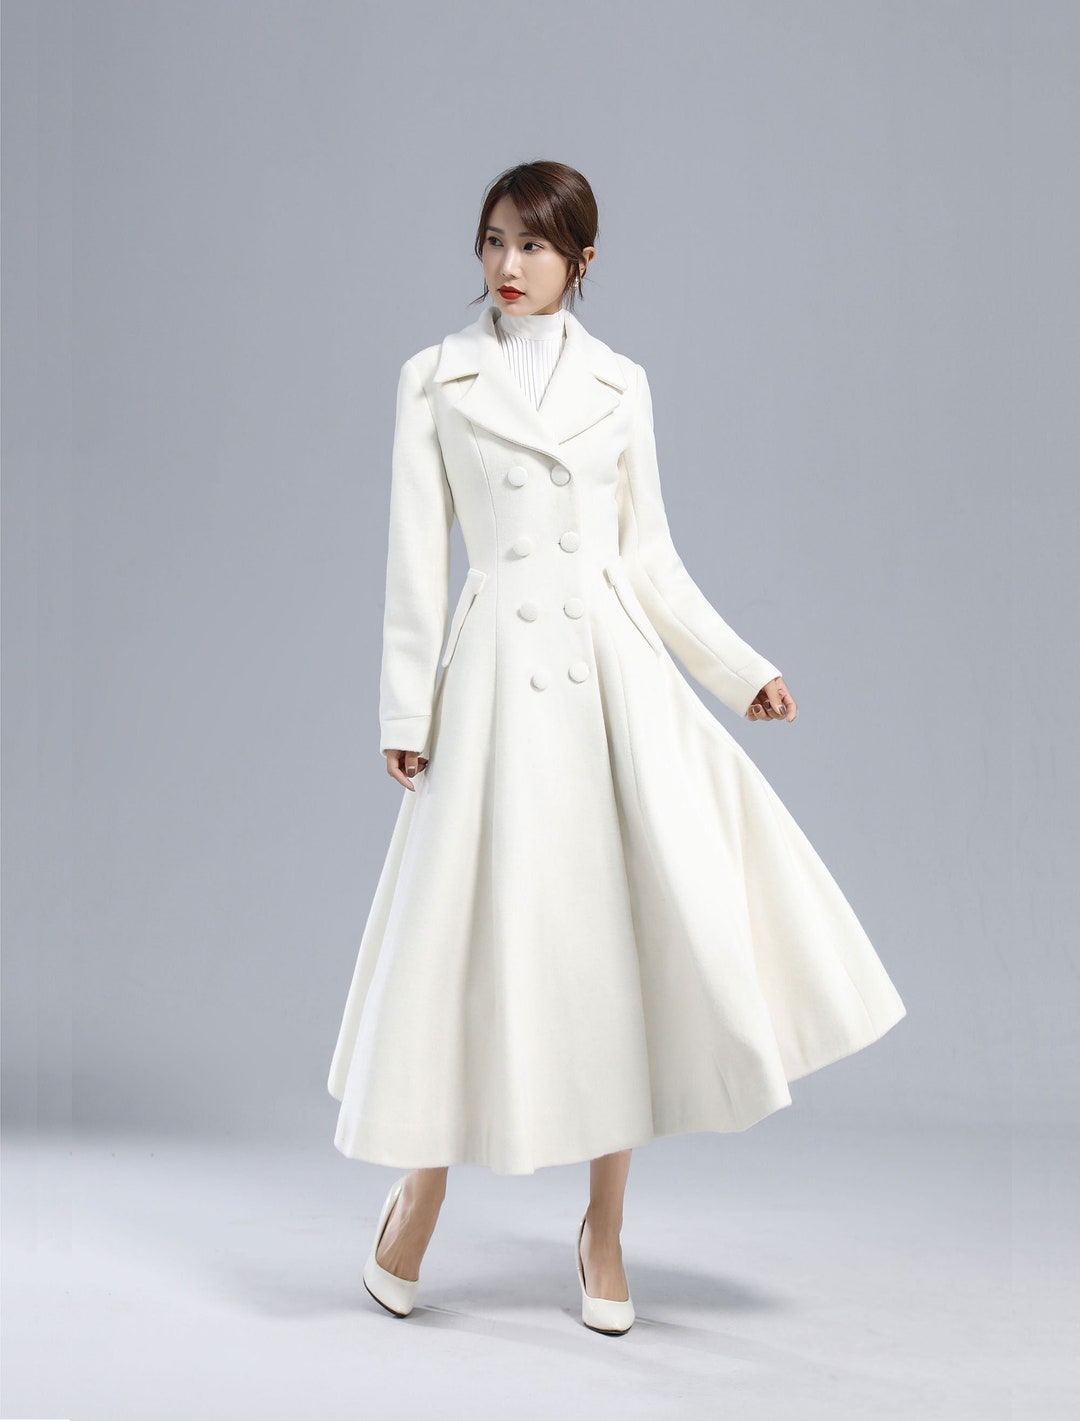 White Long Wool Coat Wedding Coat Retro Fitted Coat - Etsy